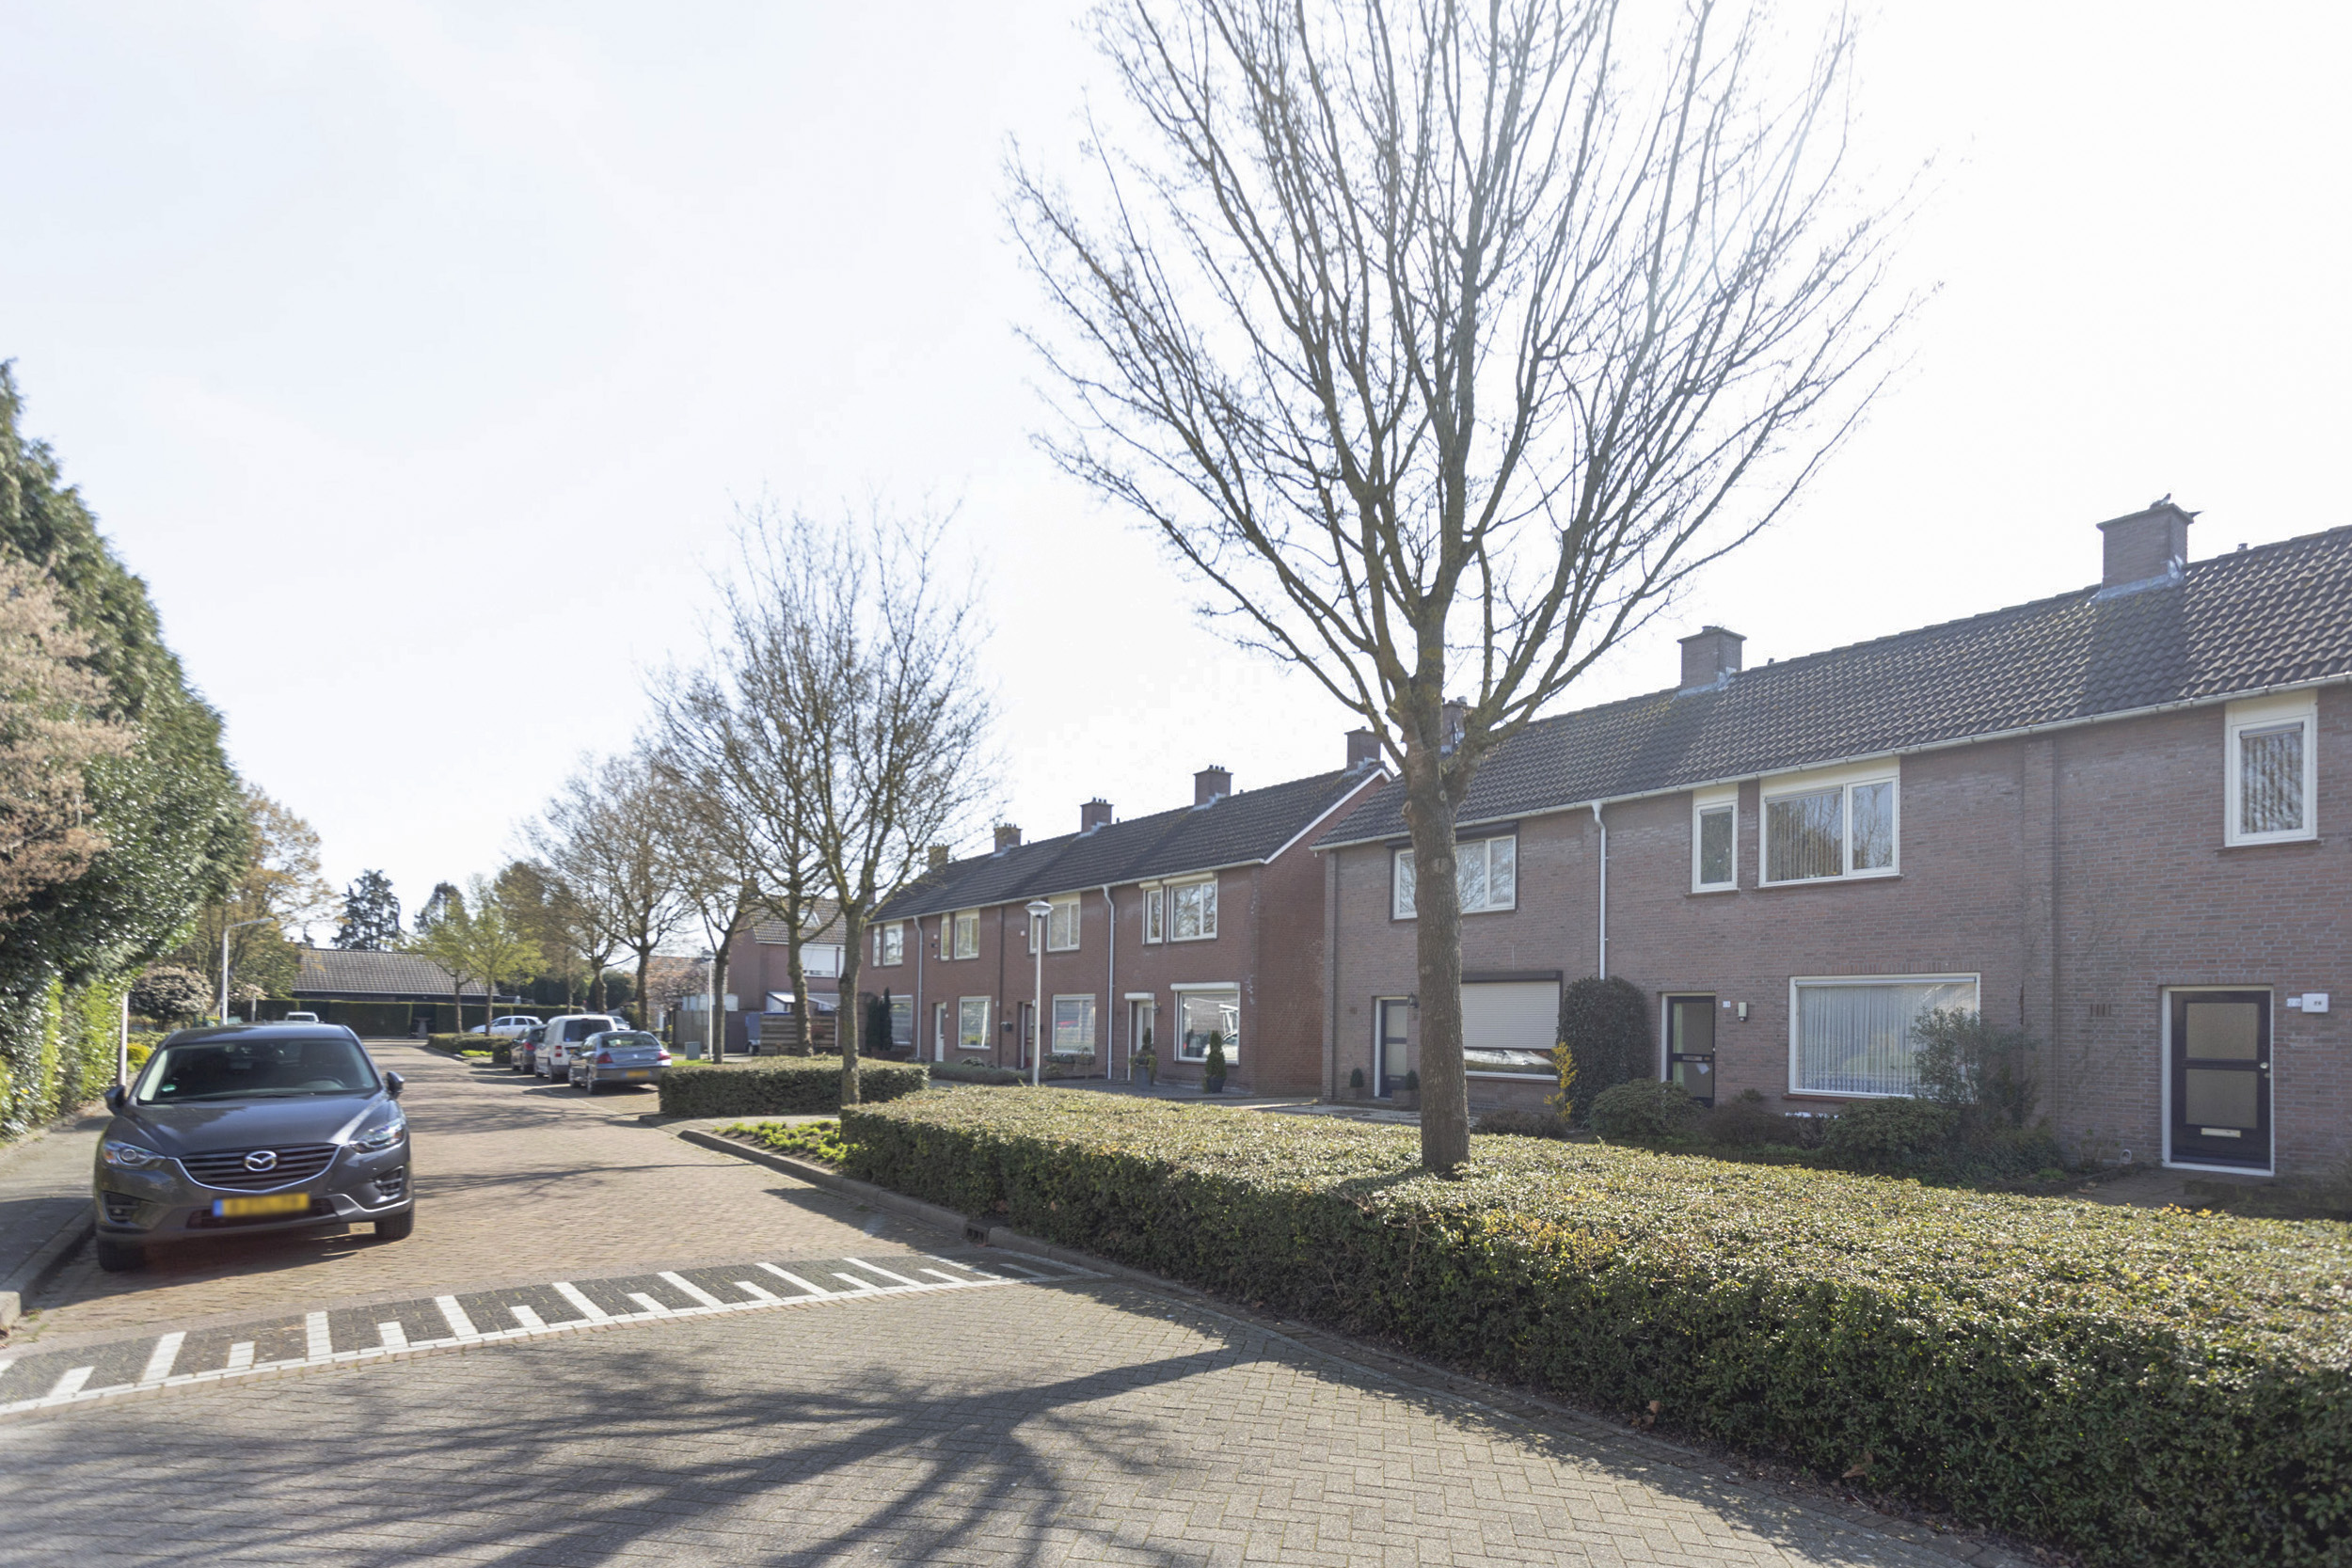 Jan Steenstraat 36, 4715 BR Rucphen, Nederland